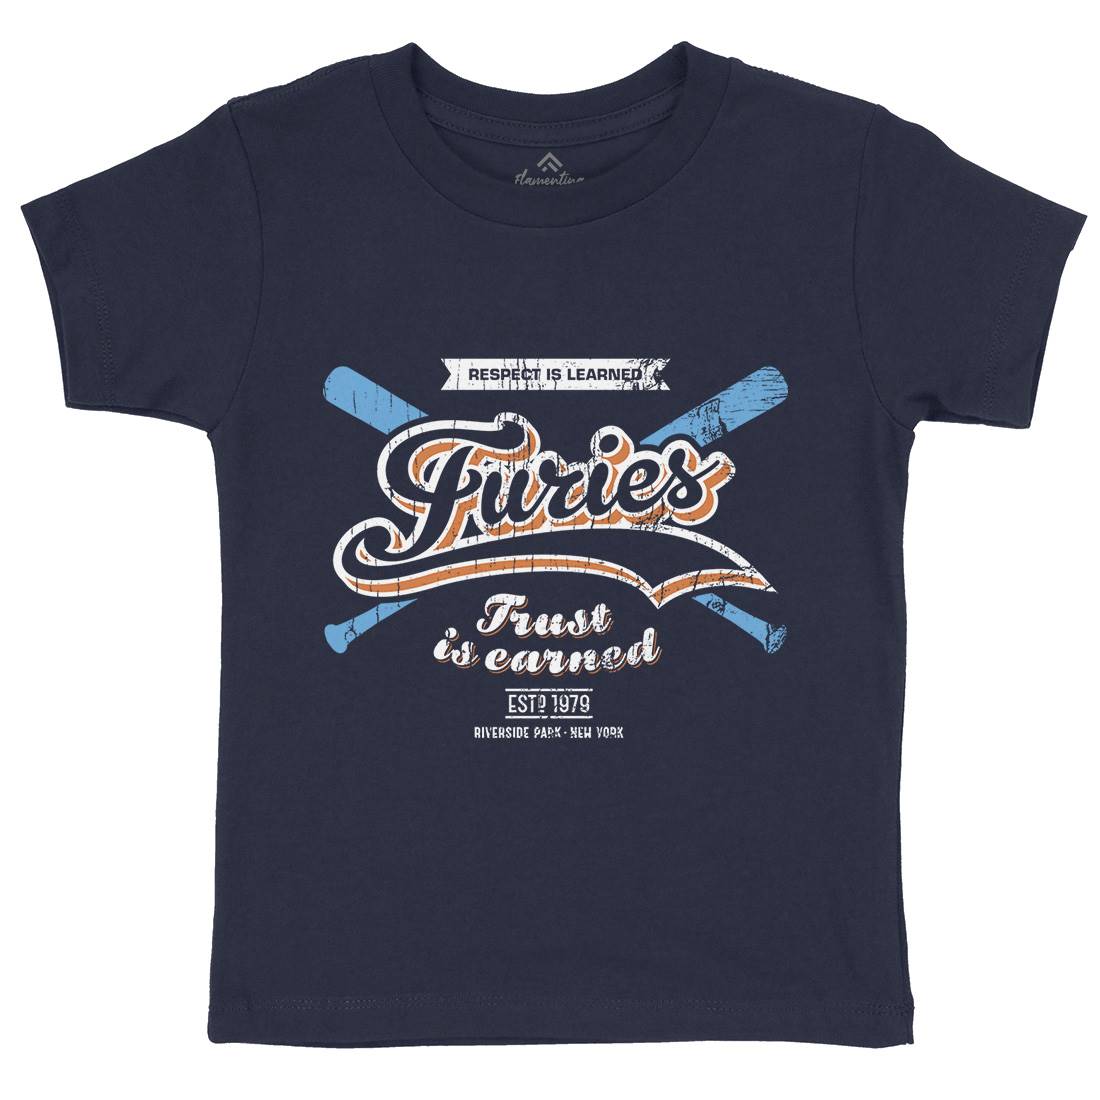 Furies Kids Crew Neck T-Shirt Sport D315